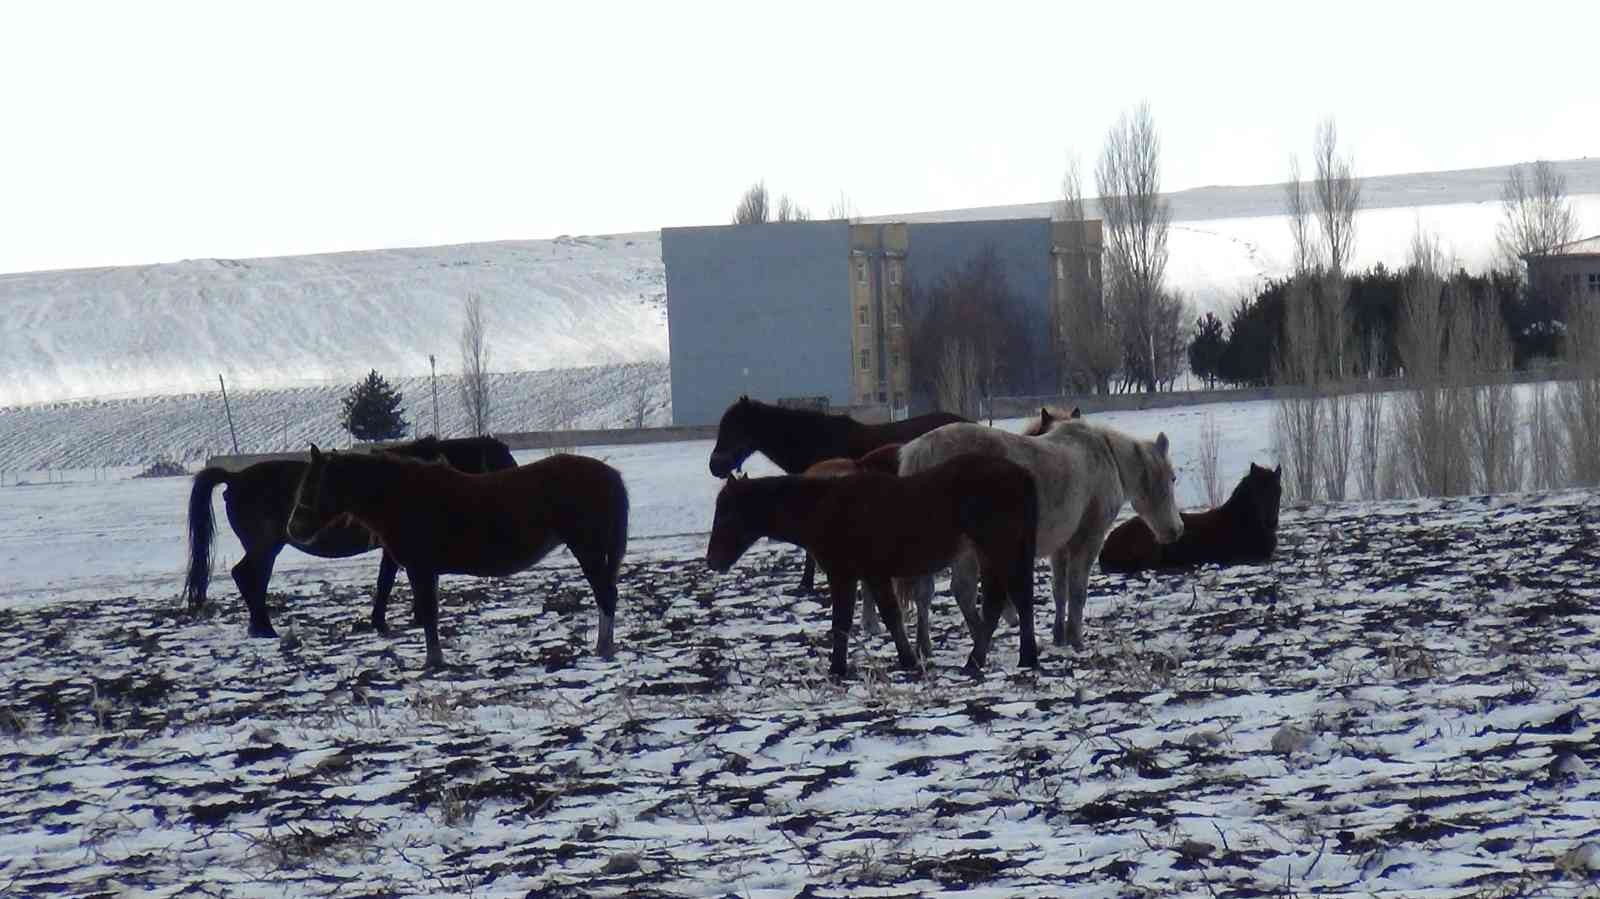 Kars’ta yılkı atları soğukla mücadele ediyor #kars